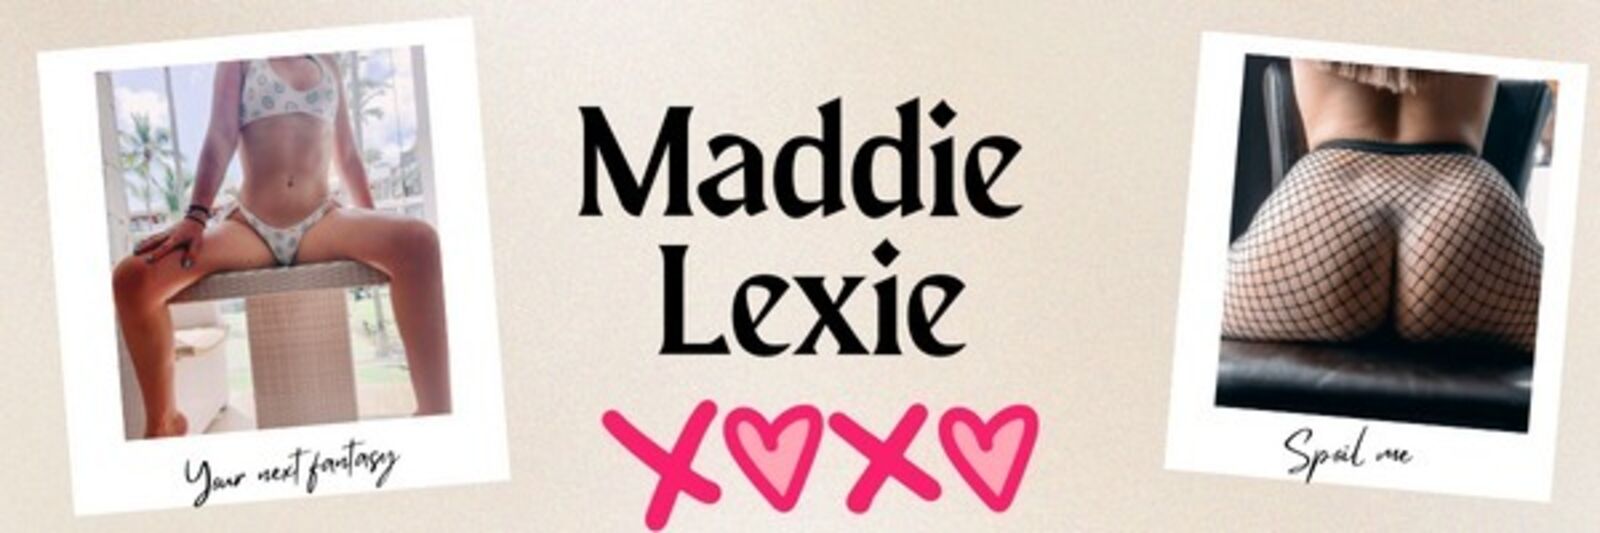 See Maddie 😈🔥 profile